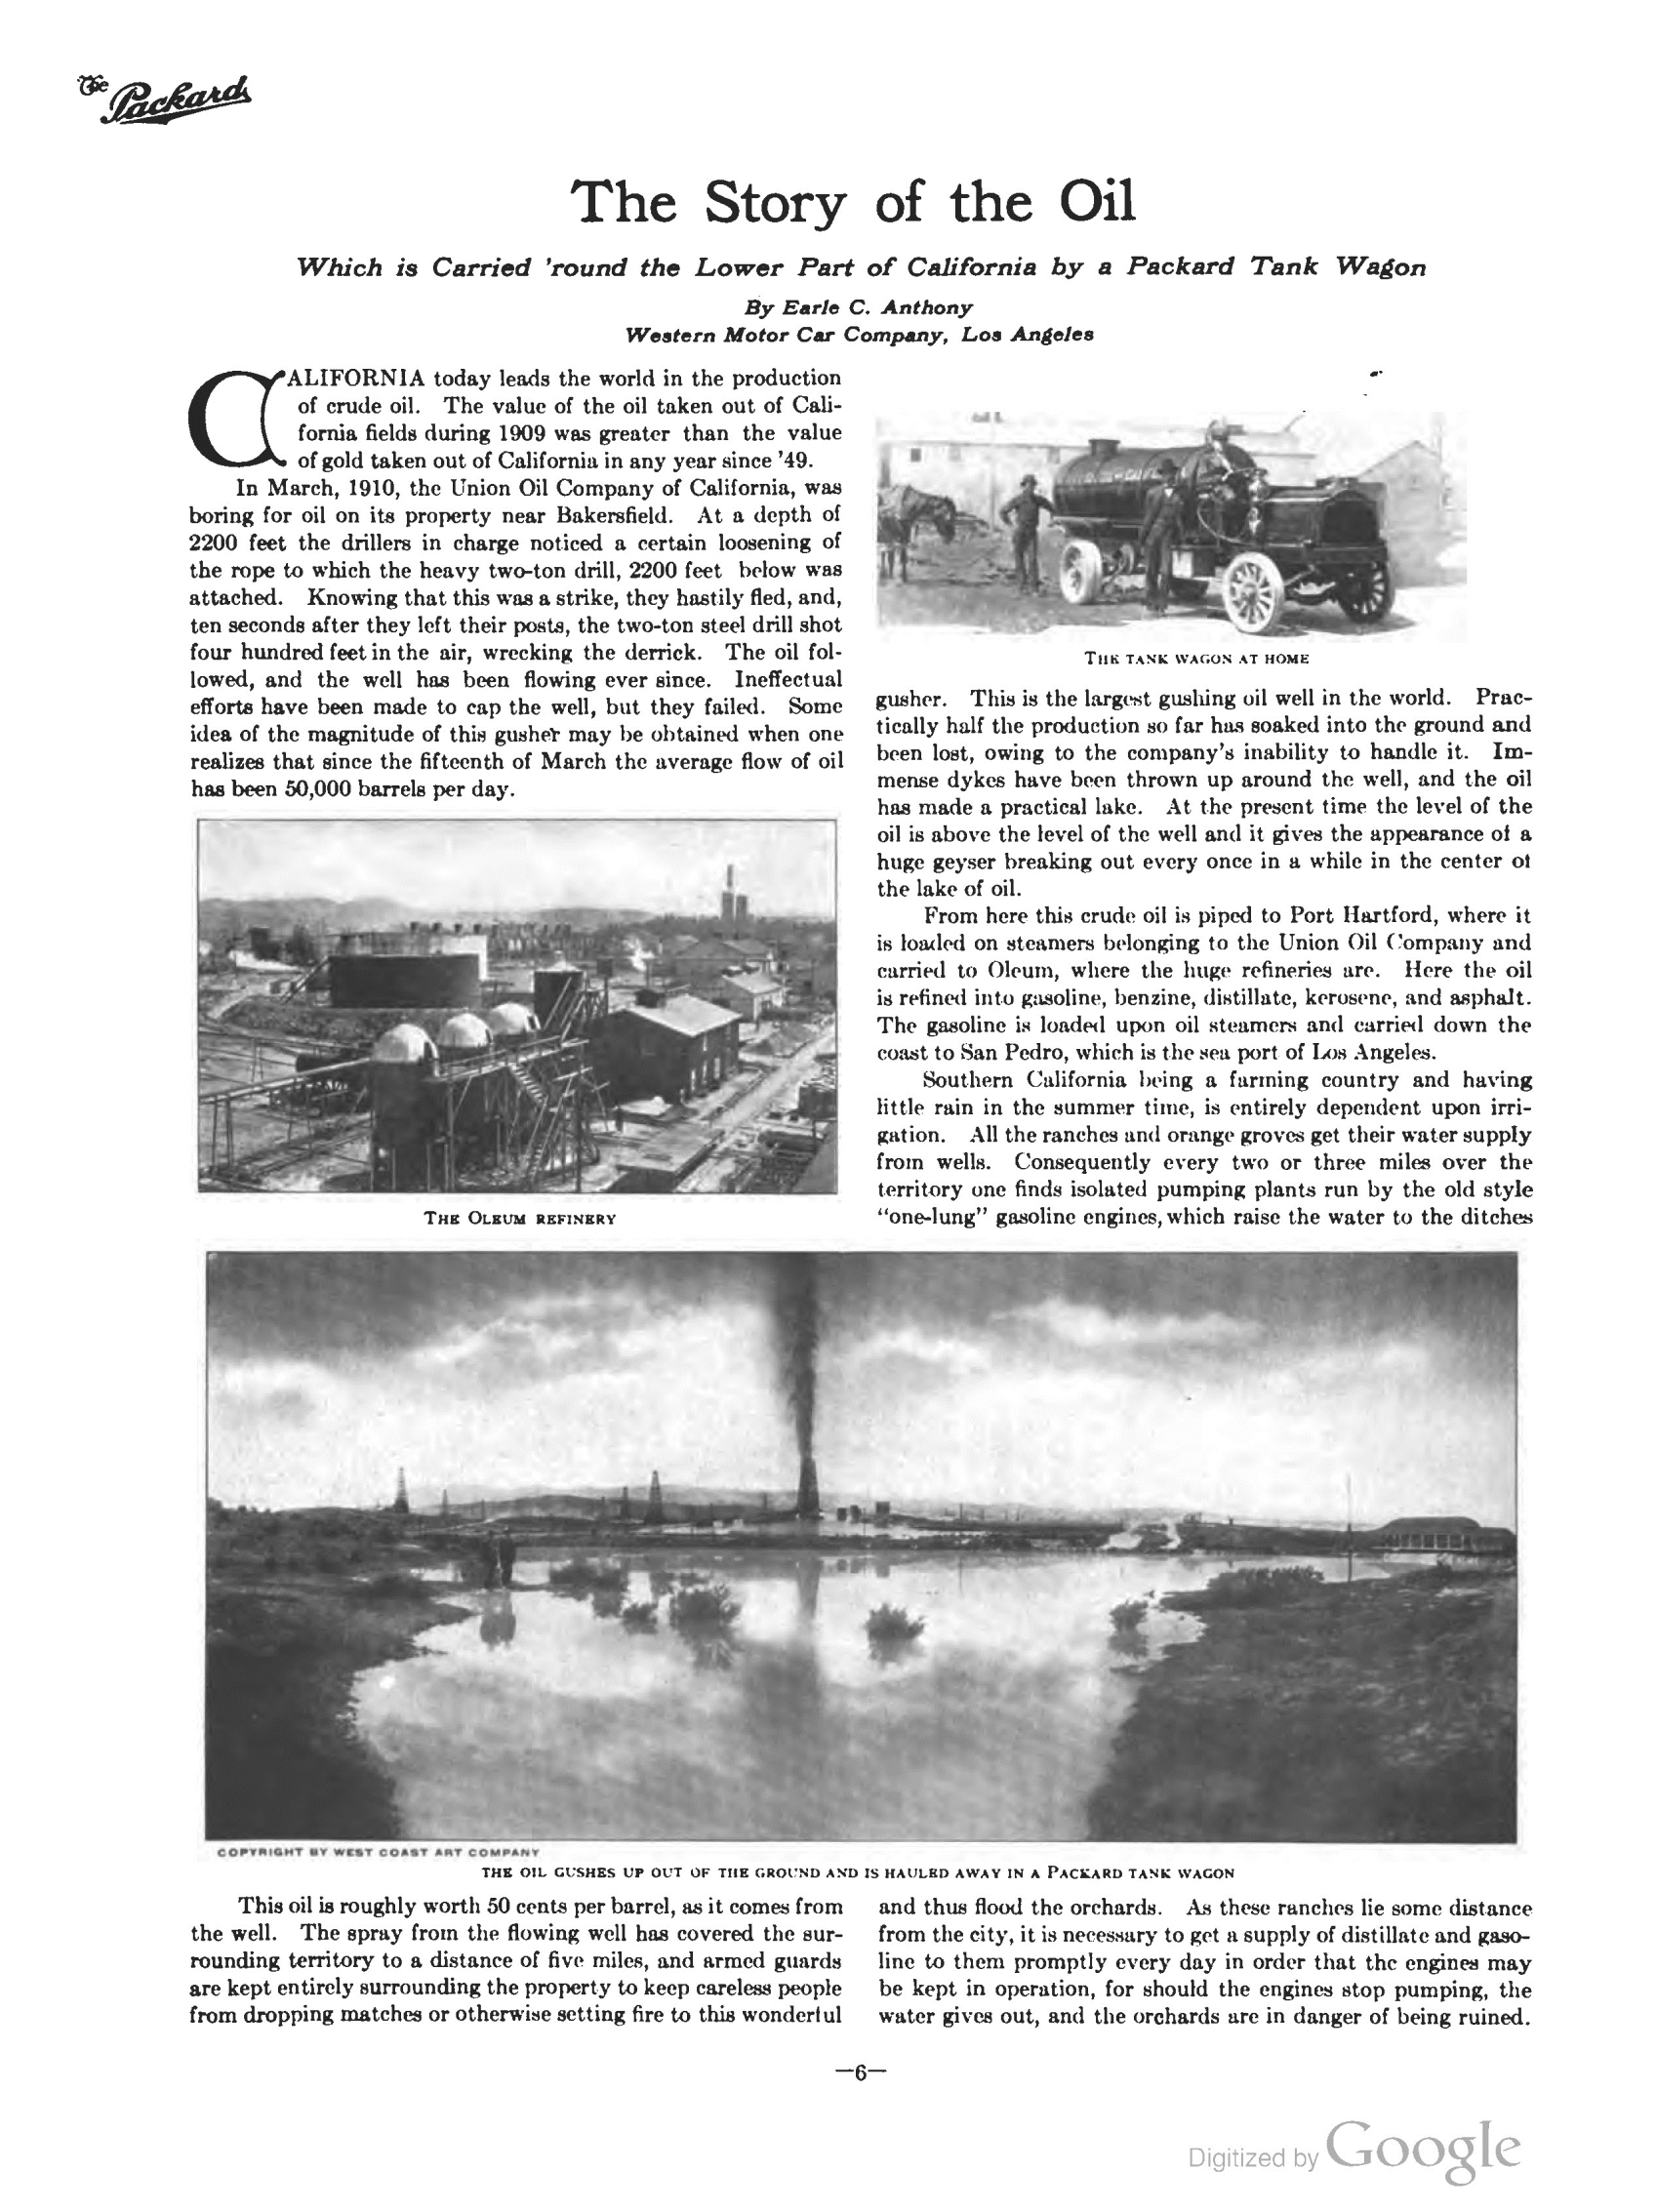 1910_The_Packard_Newsletter-090